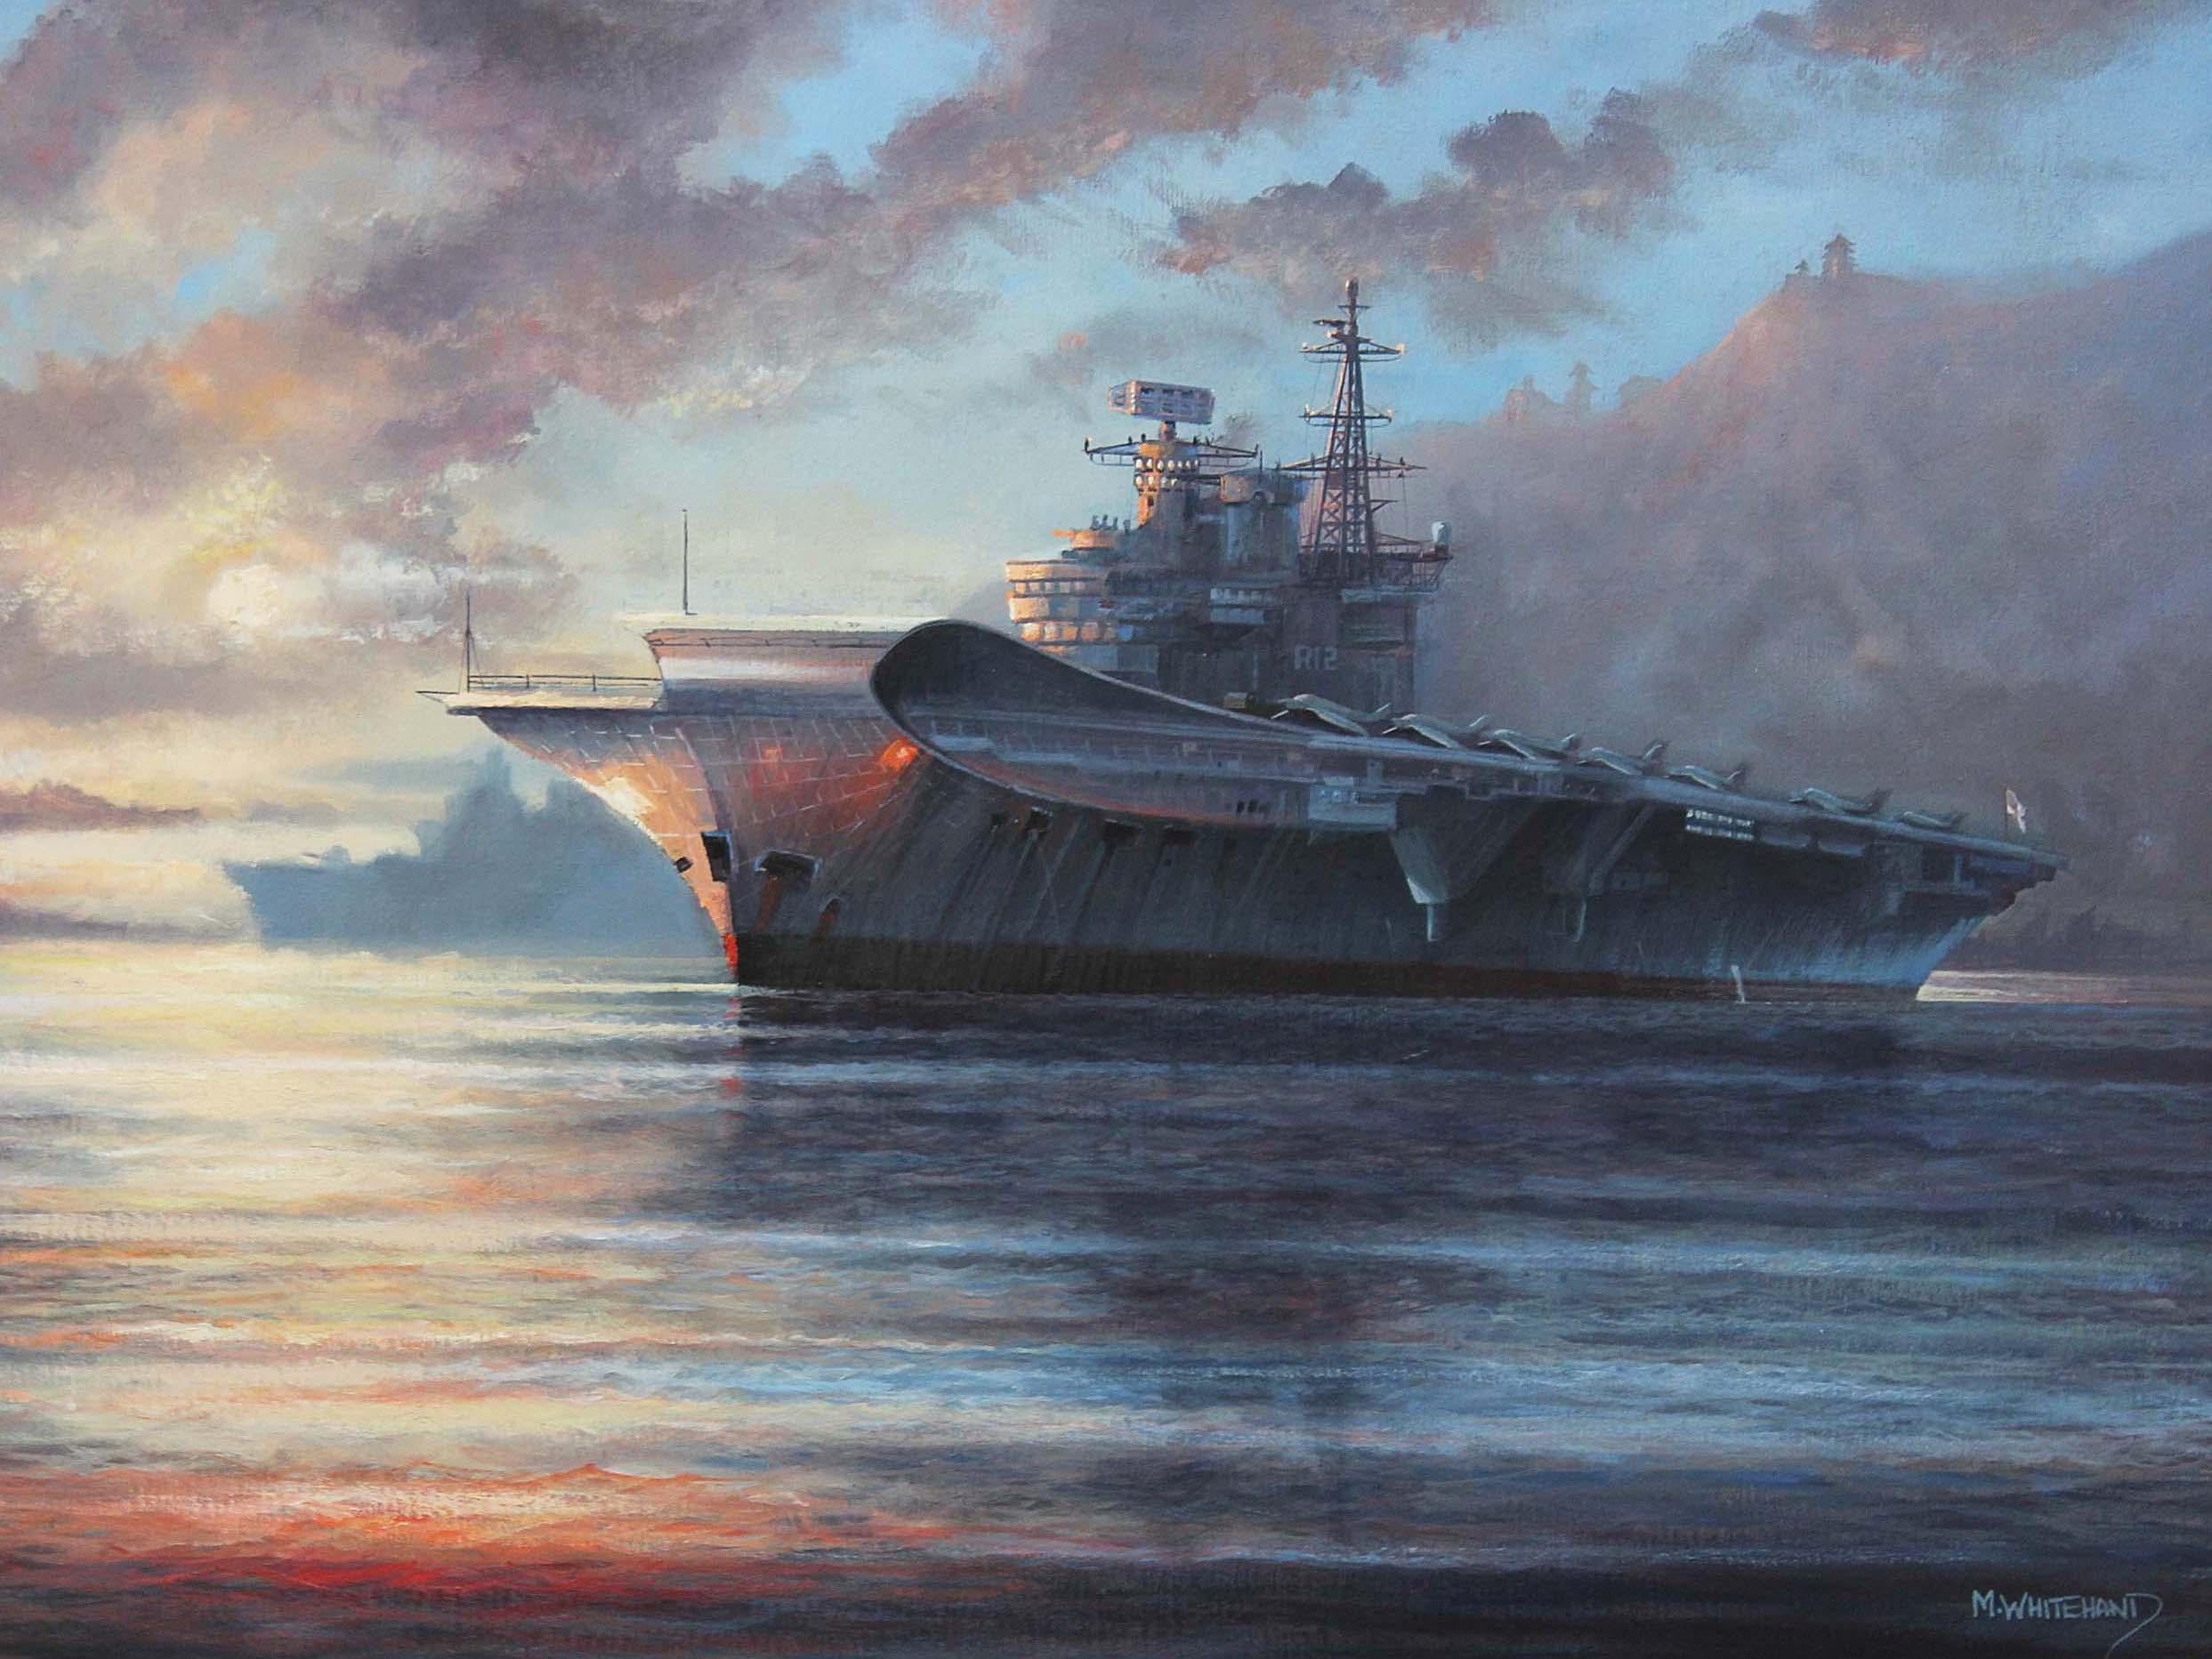 Großes Ölgemälde von Michael James Whitehand, das den britischen Flugzeugträger HMS Hermes kurz nach dem Falklandkrieg darstellt. Das Kunstwerk strahlt eine fesselnde Atmosphäre aus und setzt das Licht gekonnt ein.

Ähnlich große Gemälde dieses